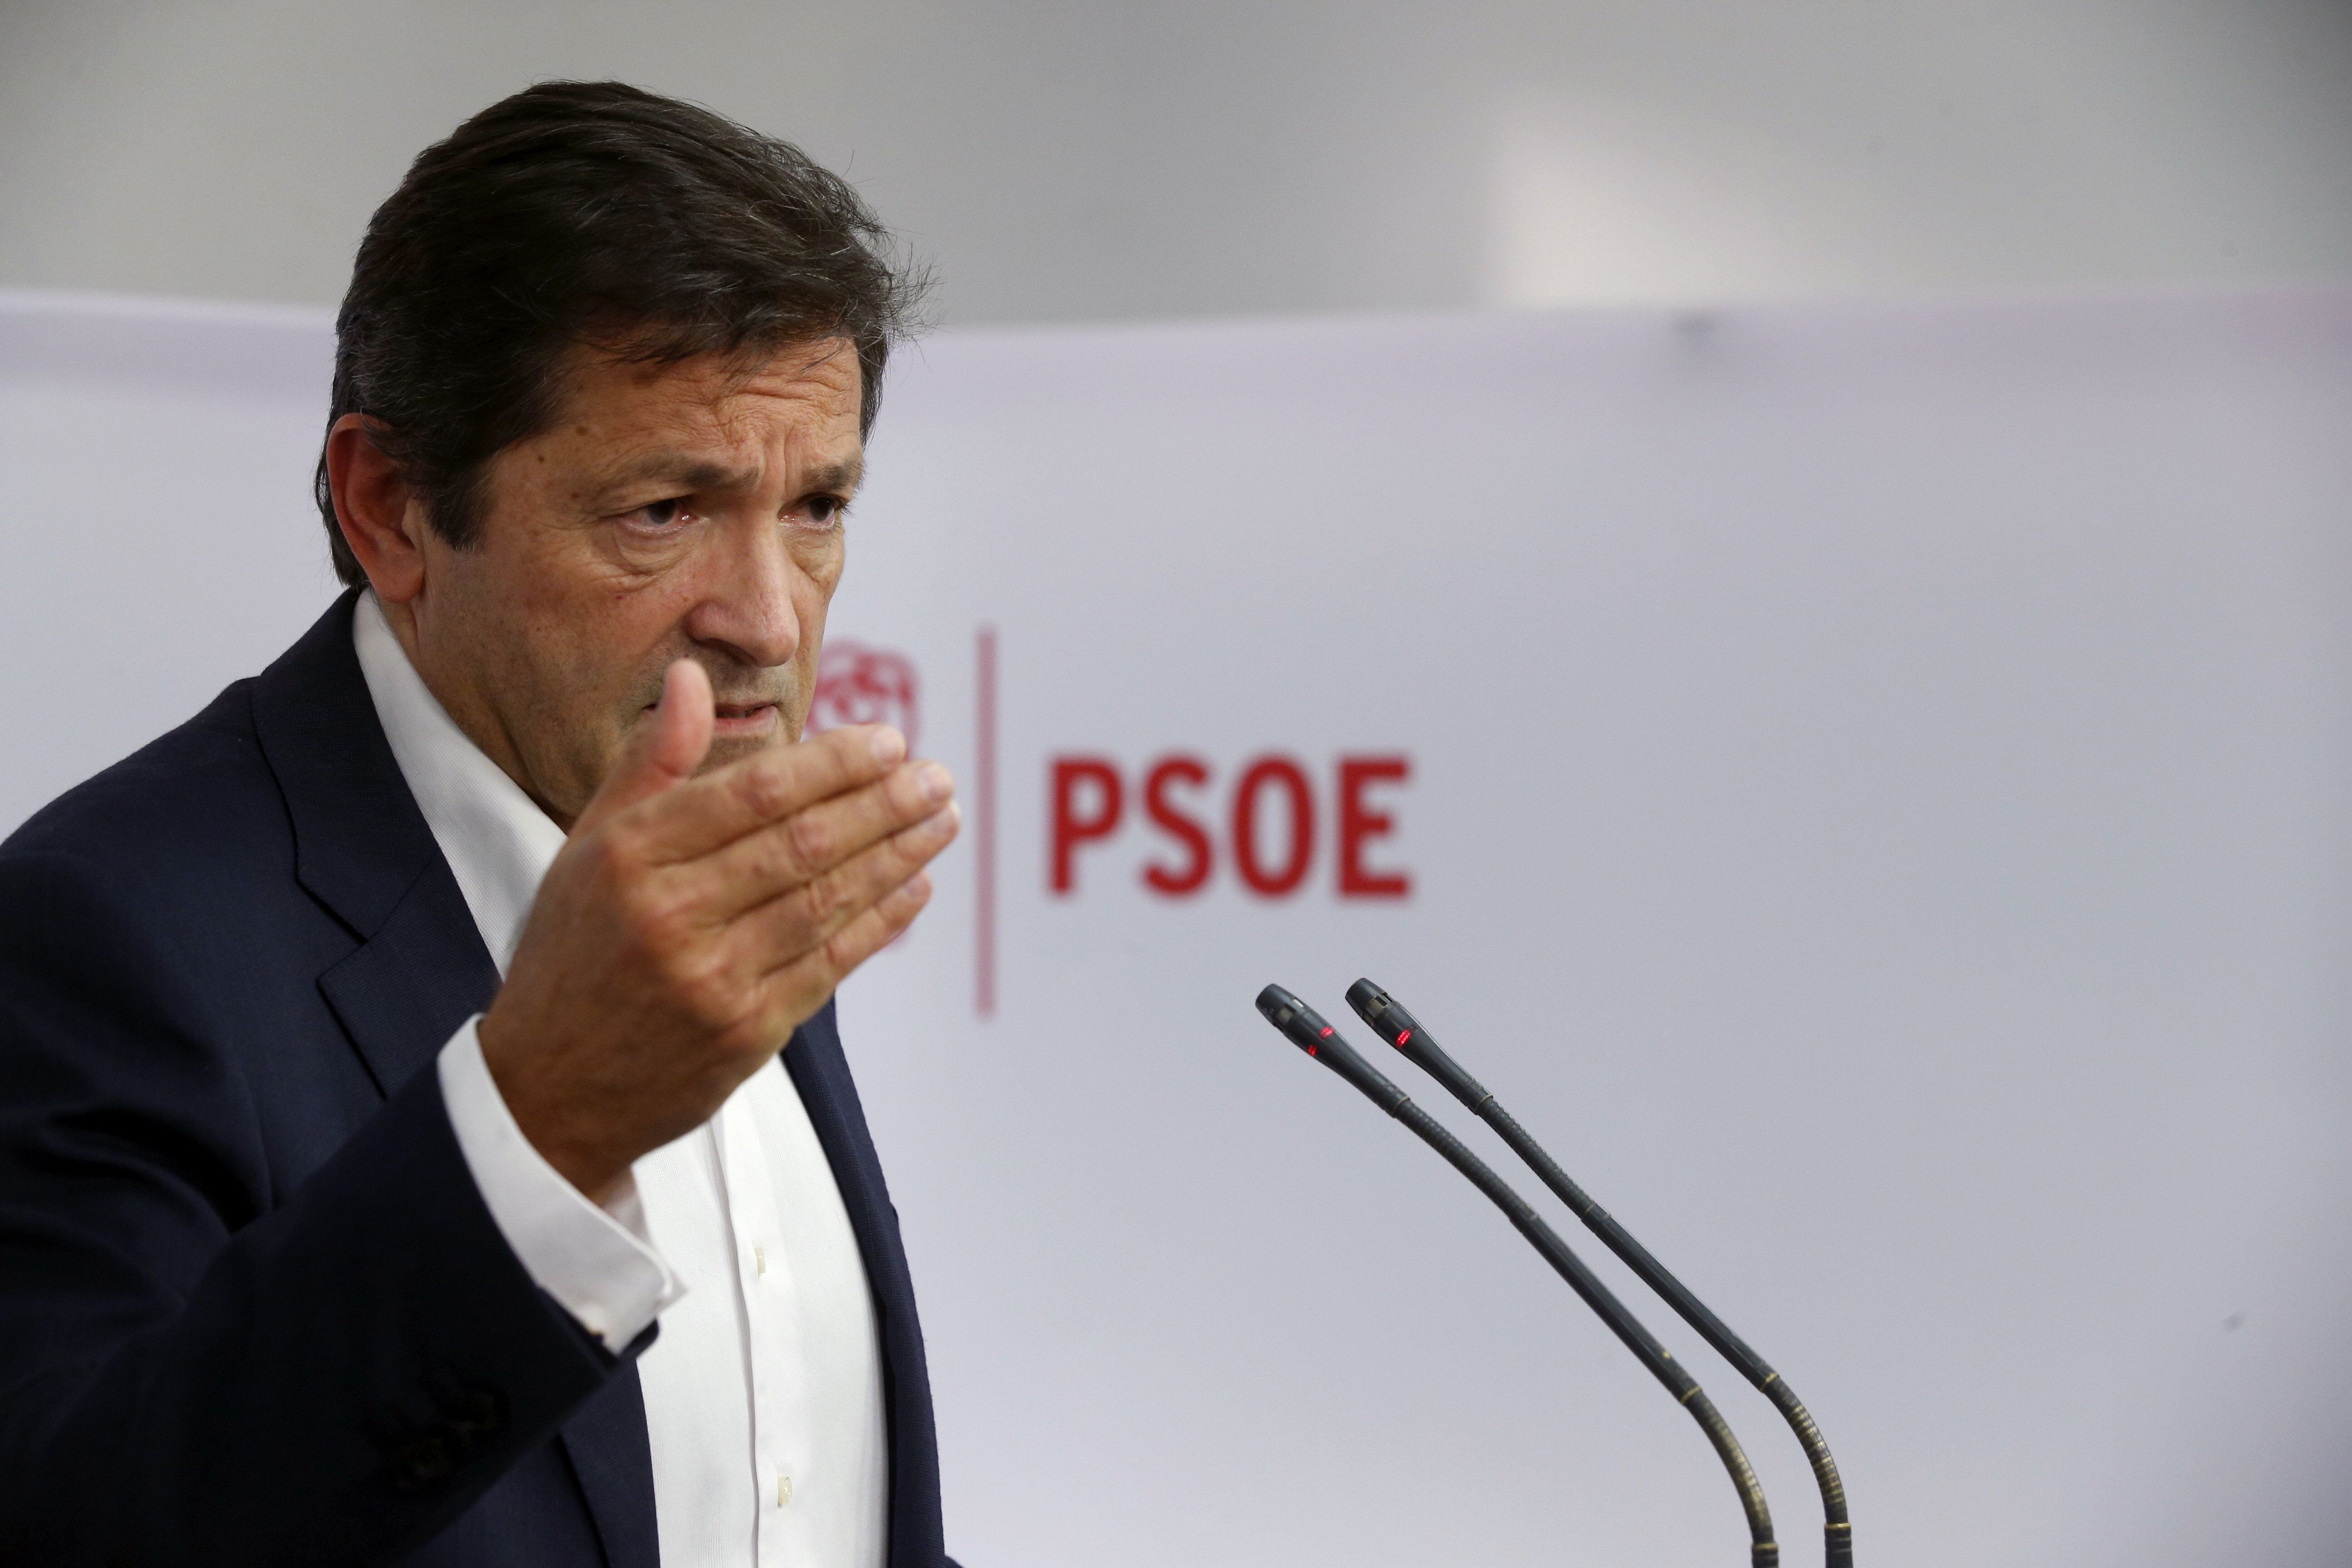 La gestora del PSOE matisa: "No és el mateix abstenció que suport"